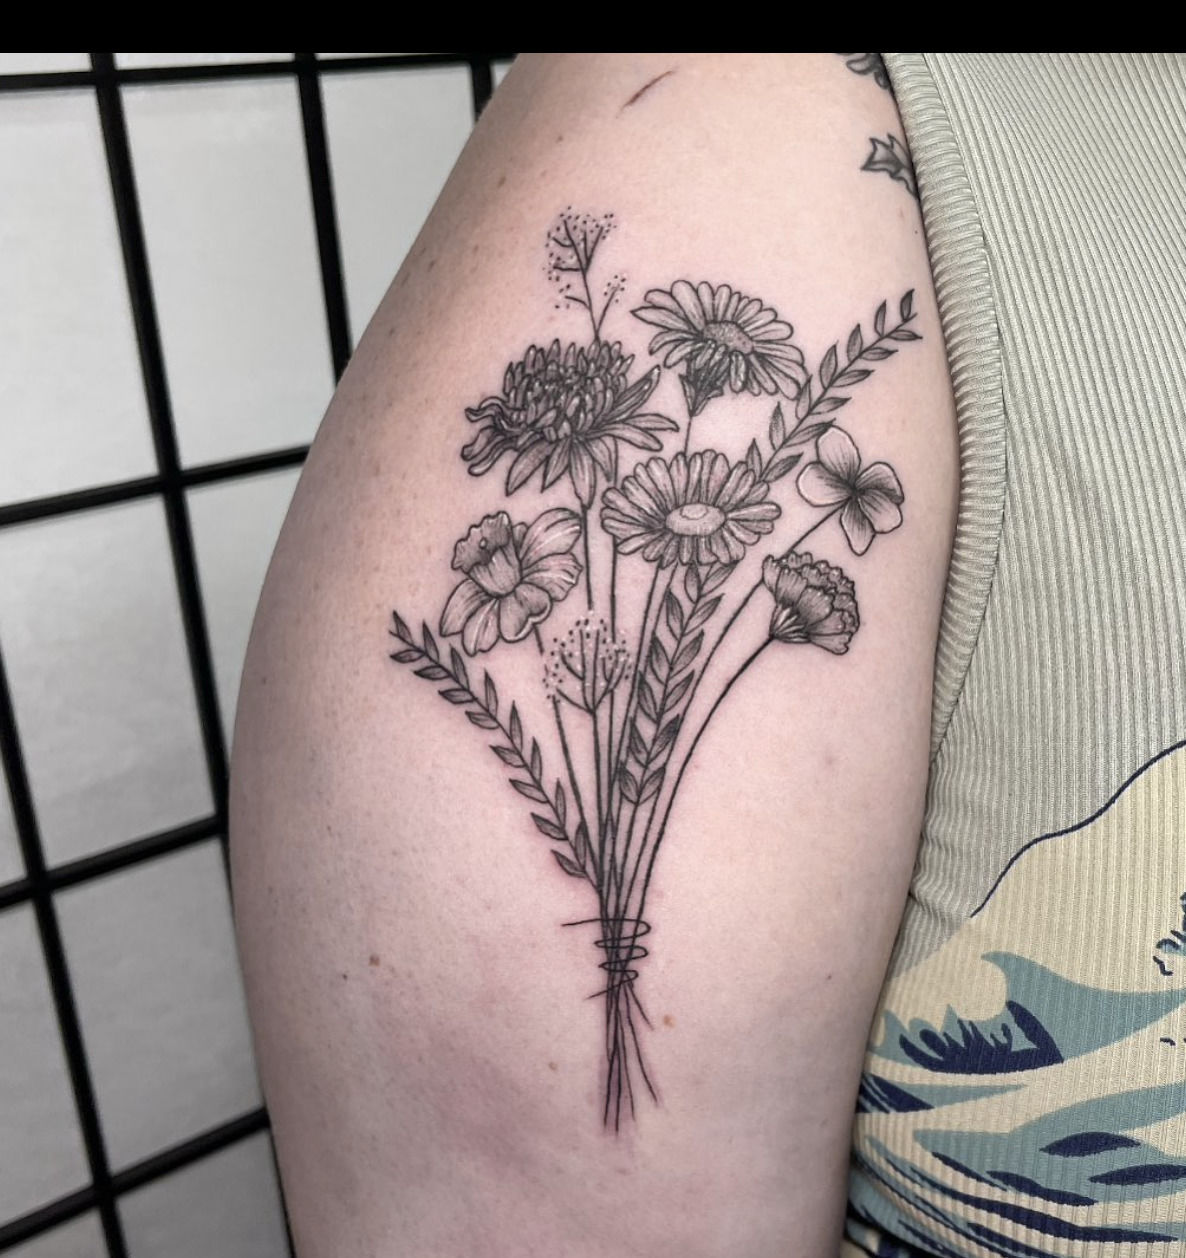 jadyn:bouquet-flower-flowers-flower-tattoos-botanical-tattoo -botanical-birth-month-flower-flower-bouquet-flower-bouquet-tattoo -fineline-fine-lines-finelinework-fineline-tattoo